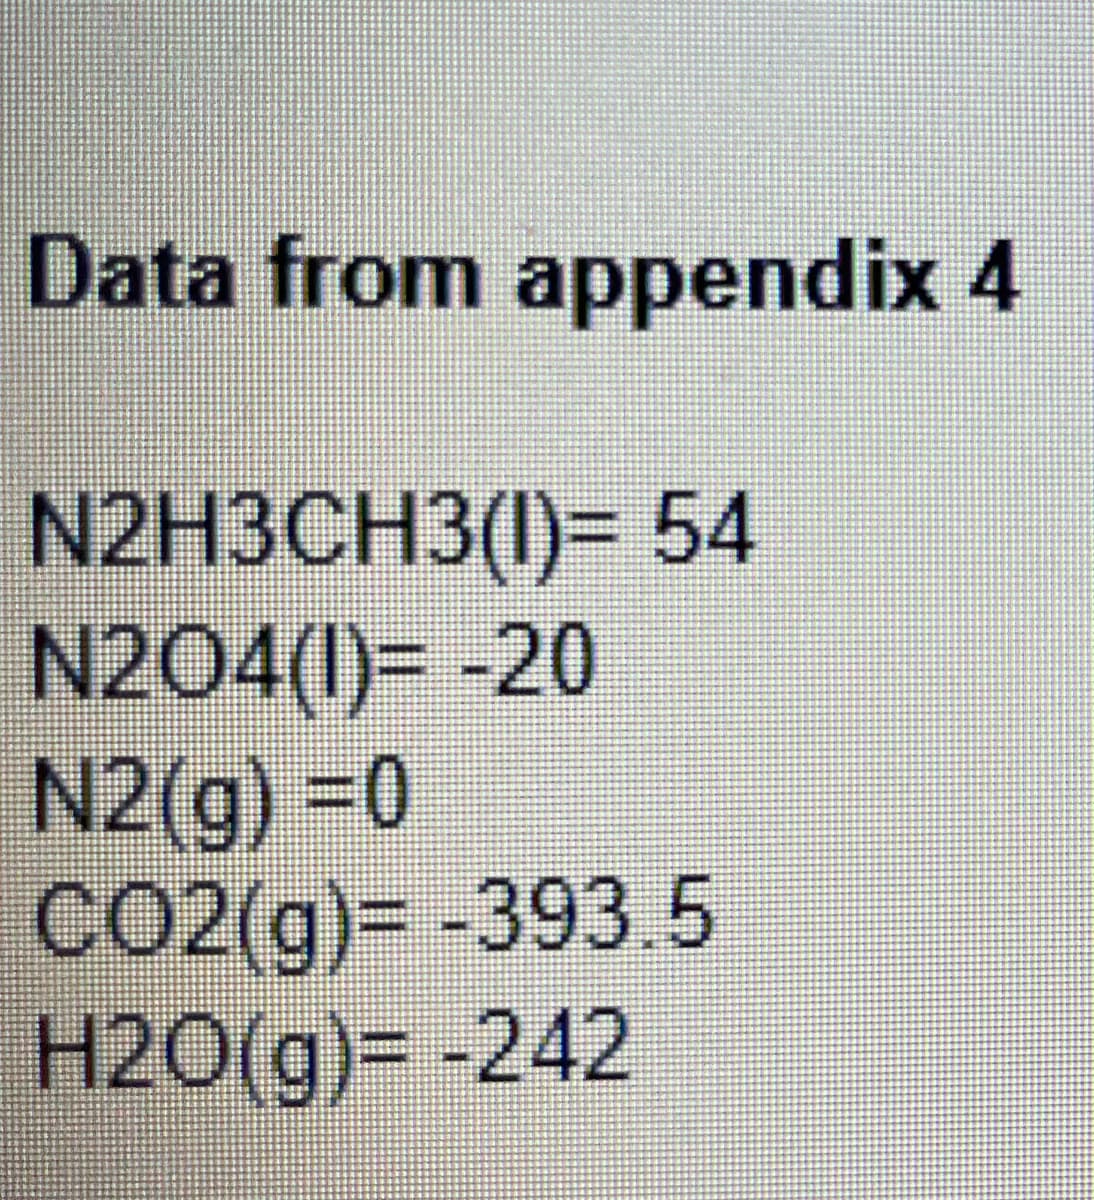 Data from appendix 4
N2H3CH3(1)= 54
N204(1)= -20
N2(g) =0
CO2(g)%D -393..5
H2O(g)= -242
